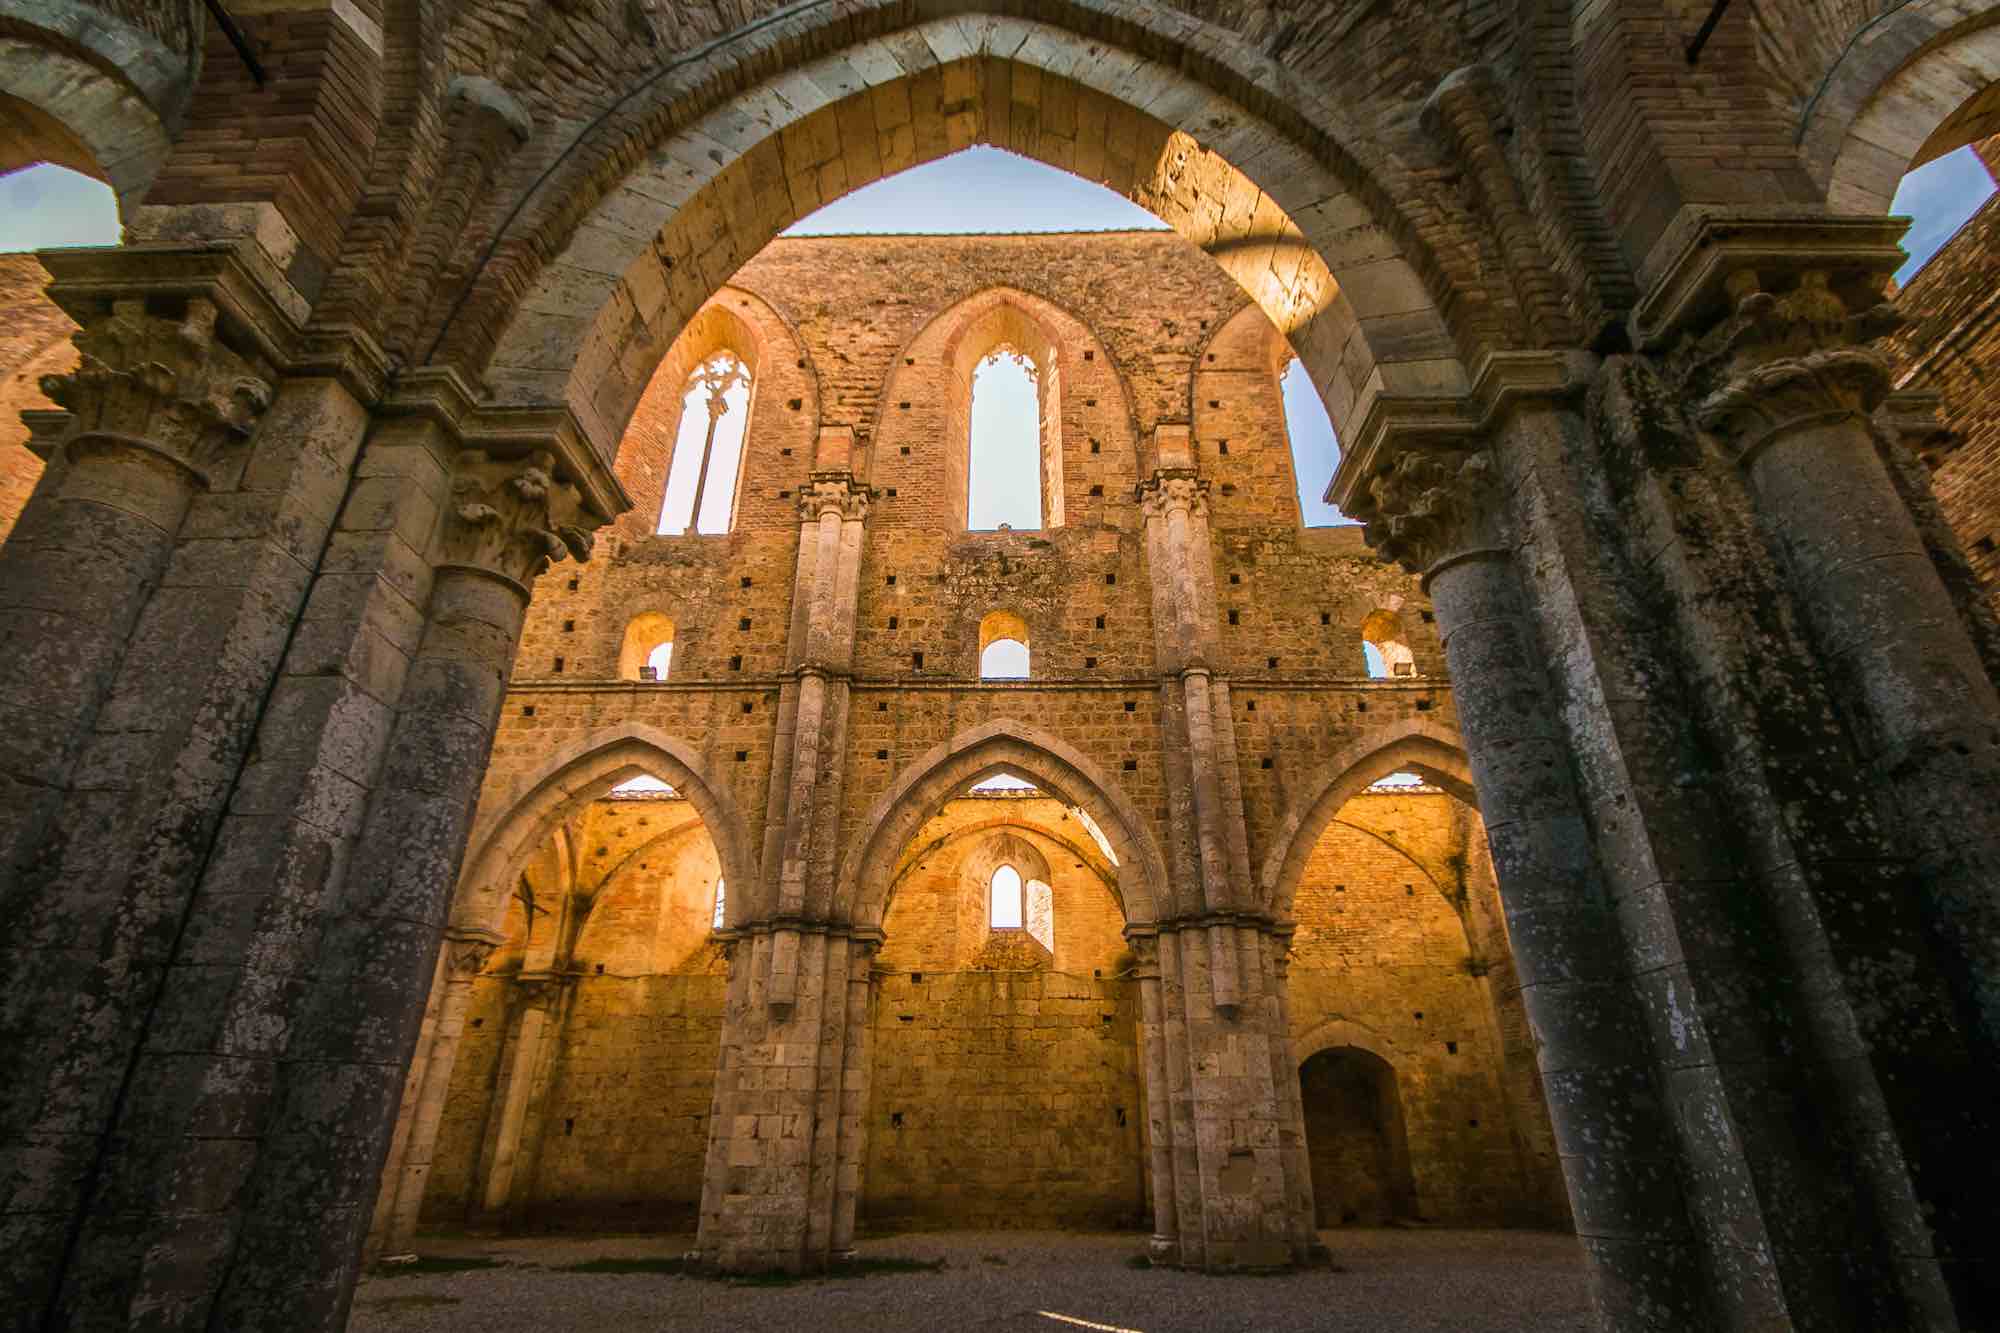 L'abbazia di San Galgano a Chiusdino in Toscana, la famosa chiesa senza tetto